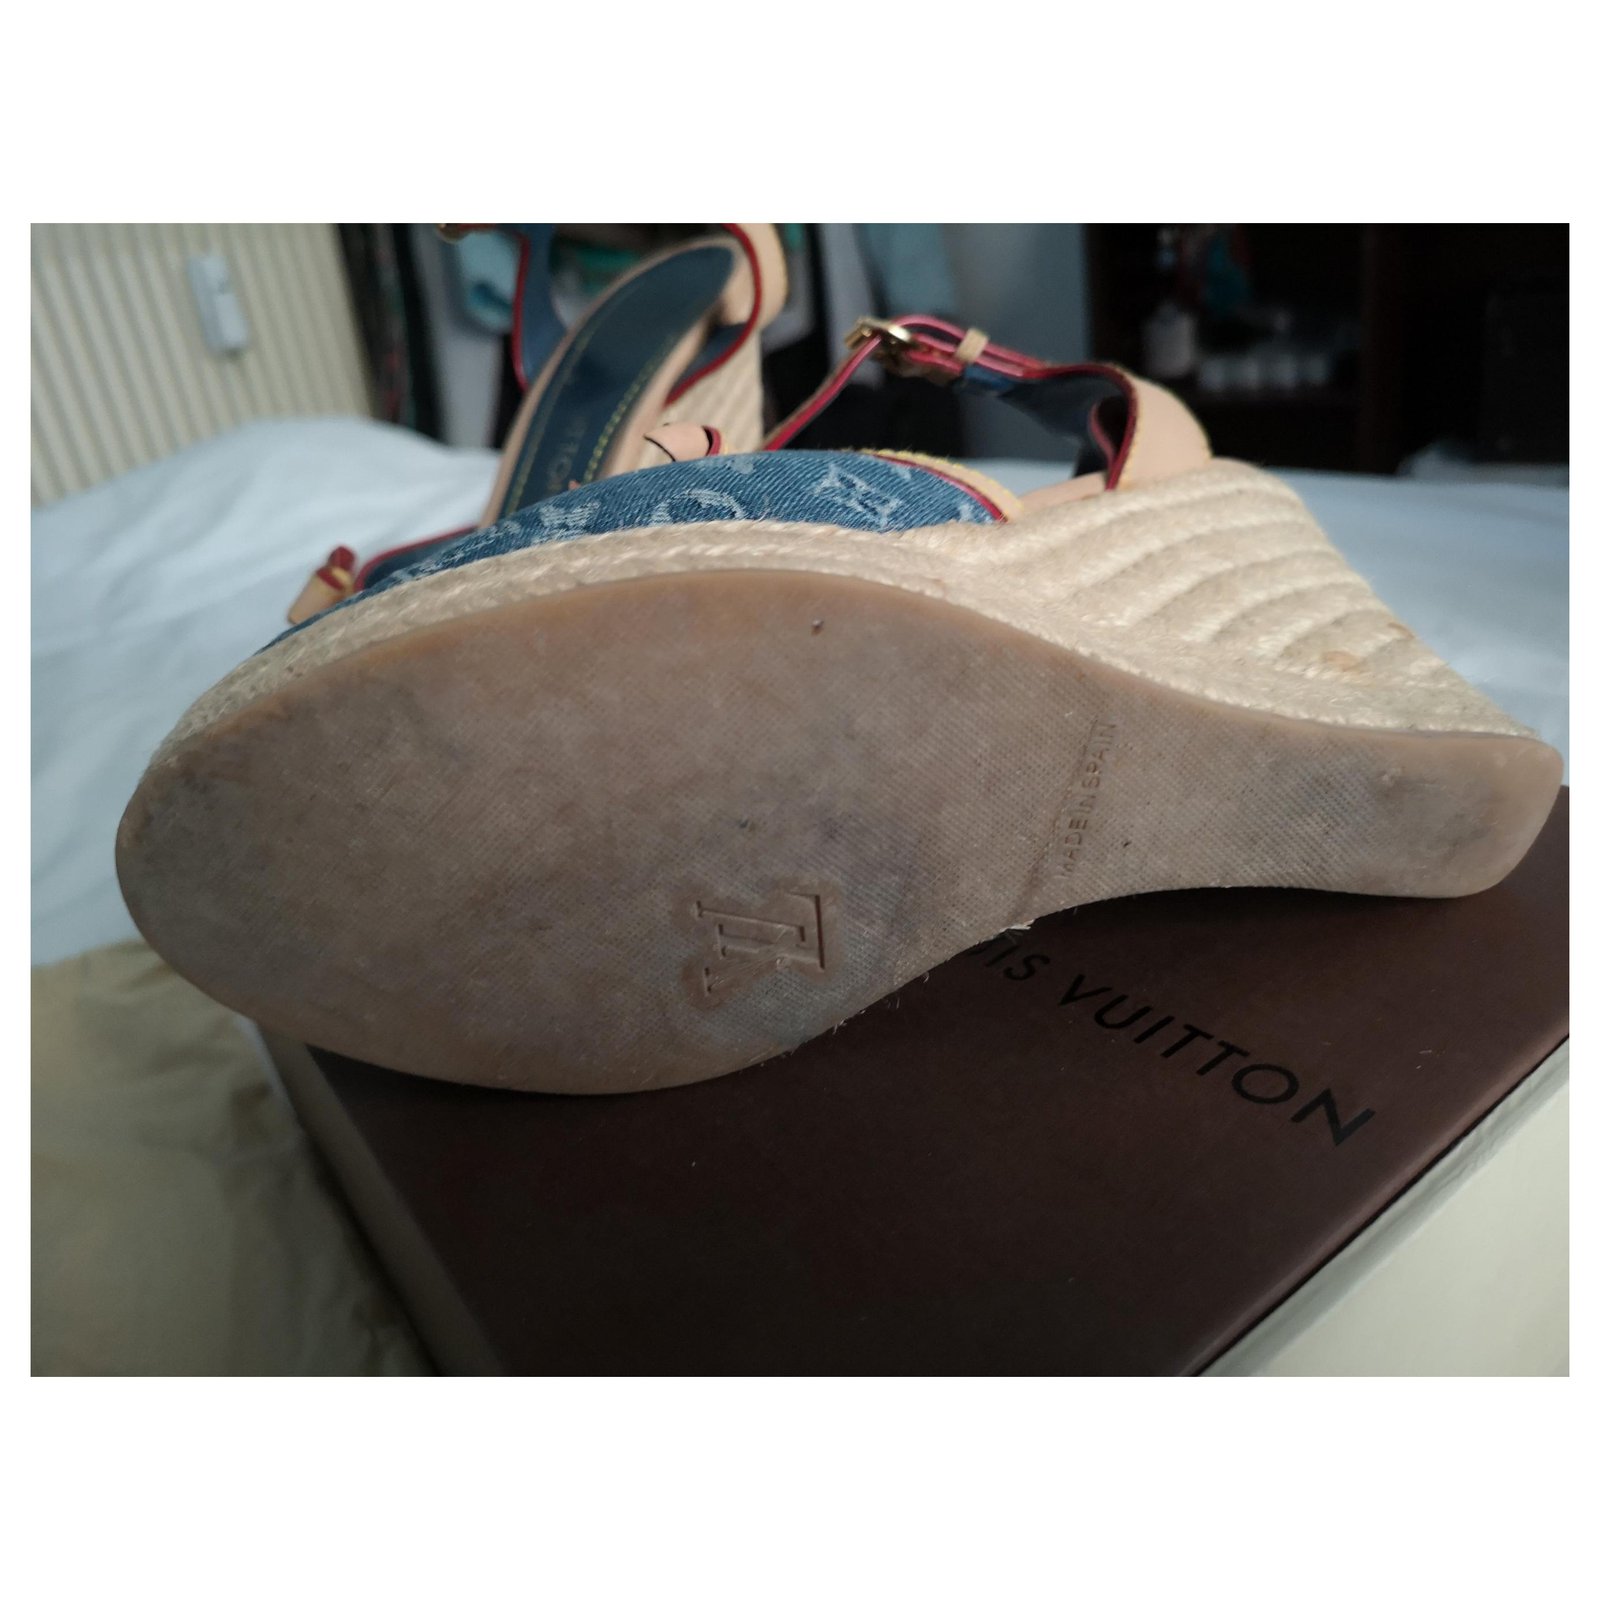 Louis Vuitton Sandals Blue Leather Denim ref.129480 - Joli Closet